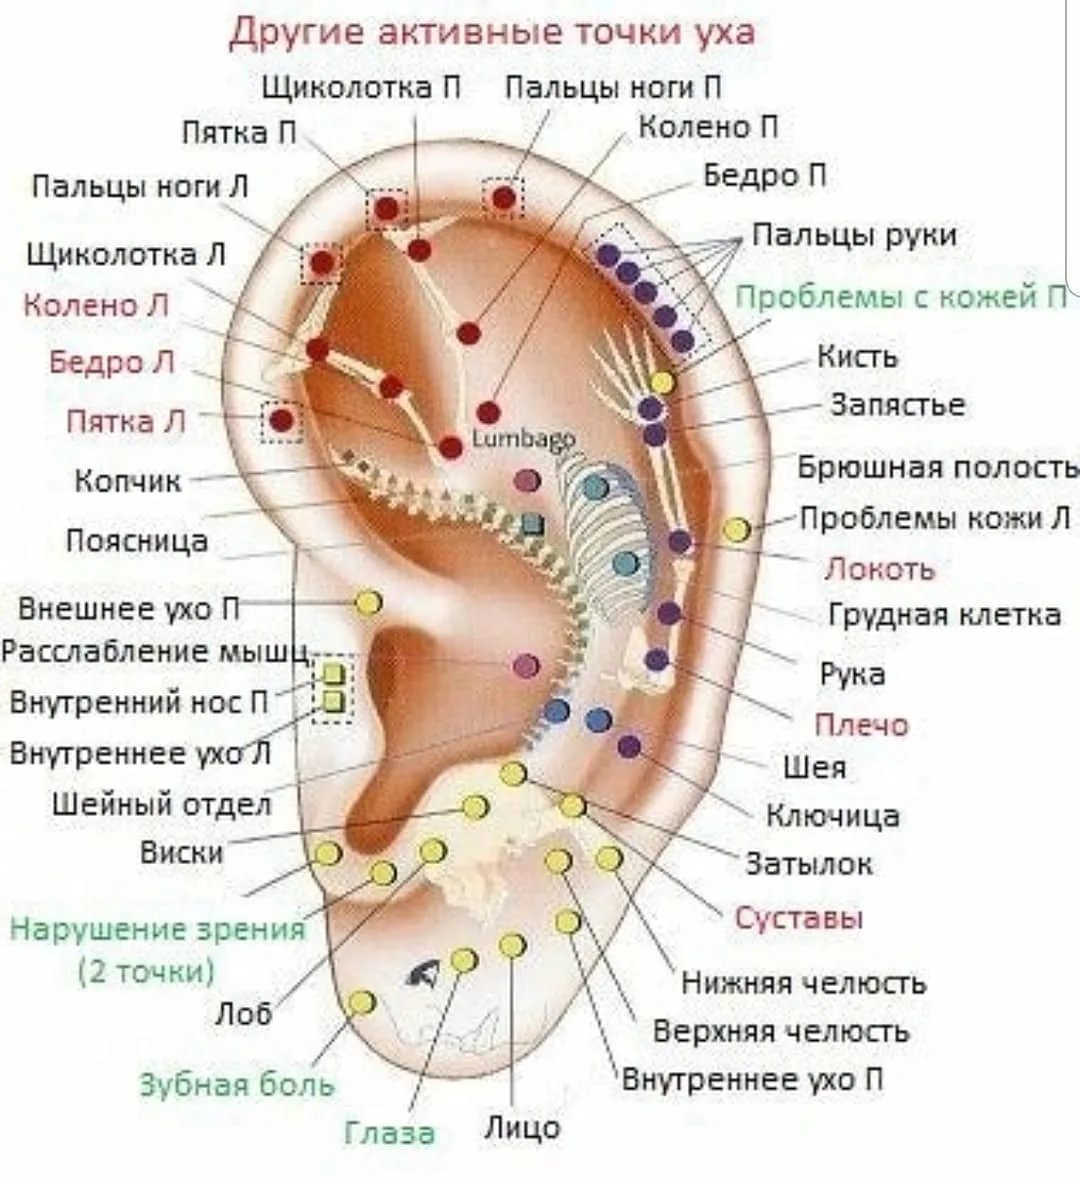 Акупунктурные точки на ушной раковине человека